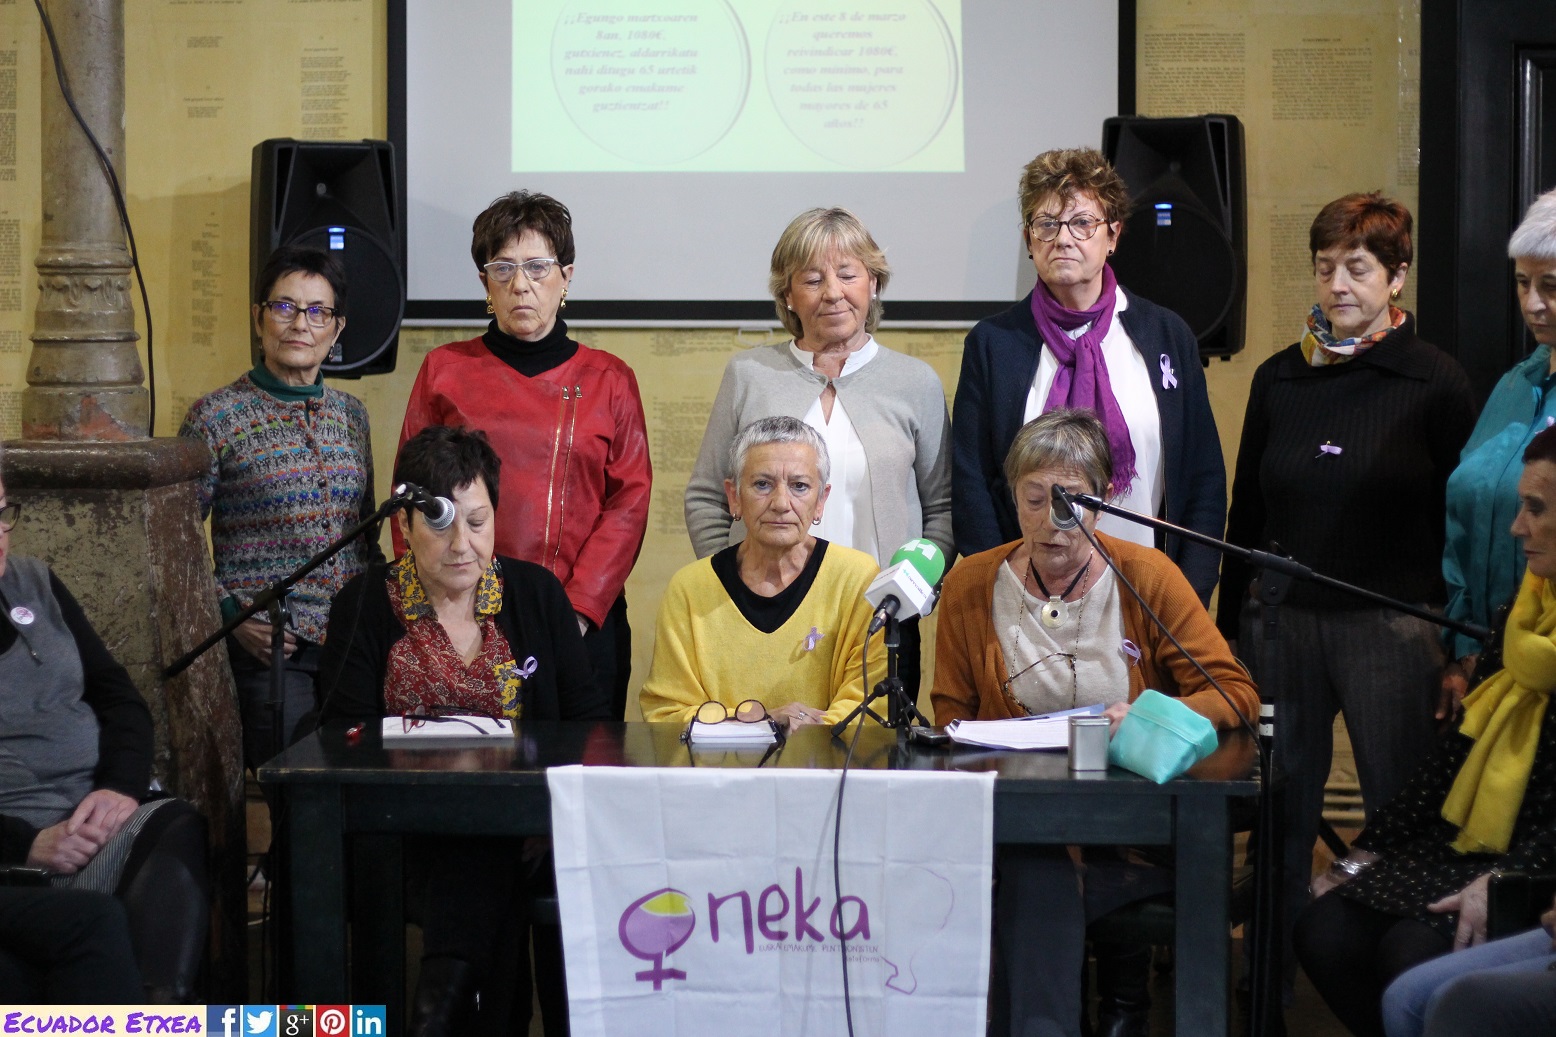 mujeres-pensionistas-oneka-euskalherria-feminista-pensiones-dignas-bilbao-8-marzo-jubiladas